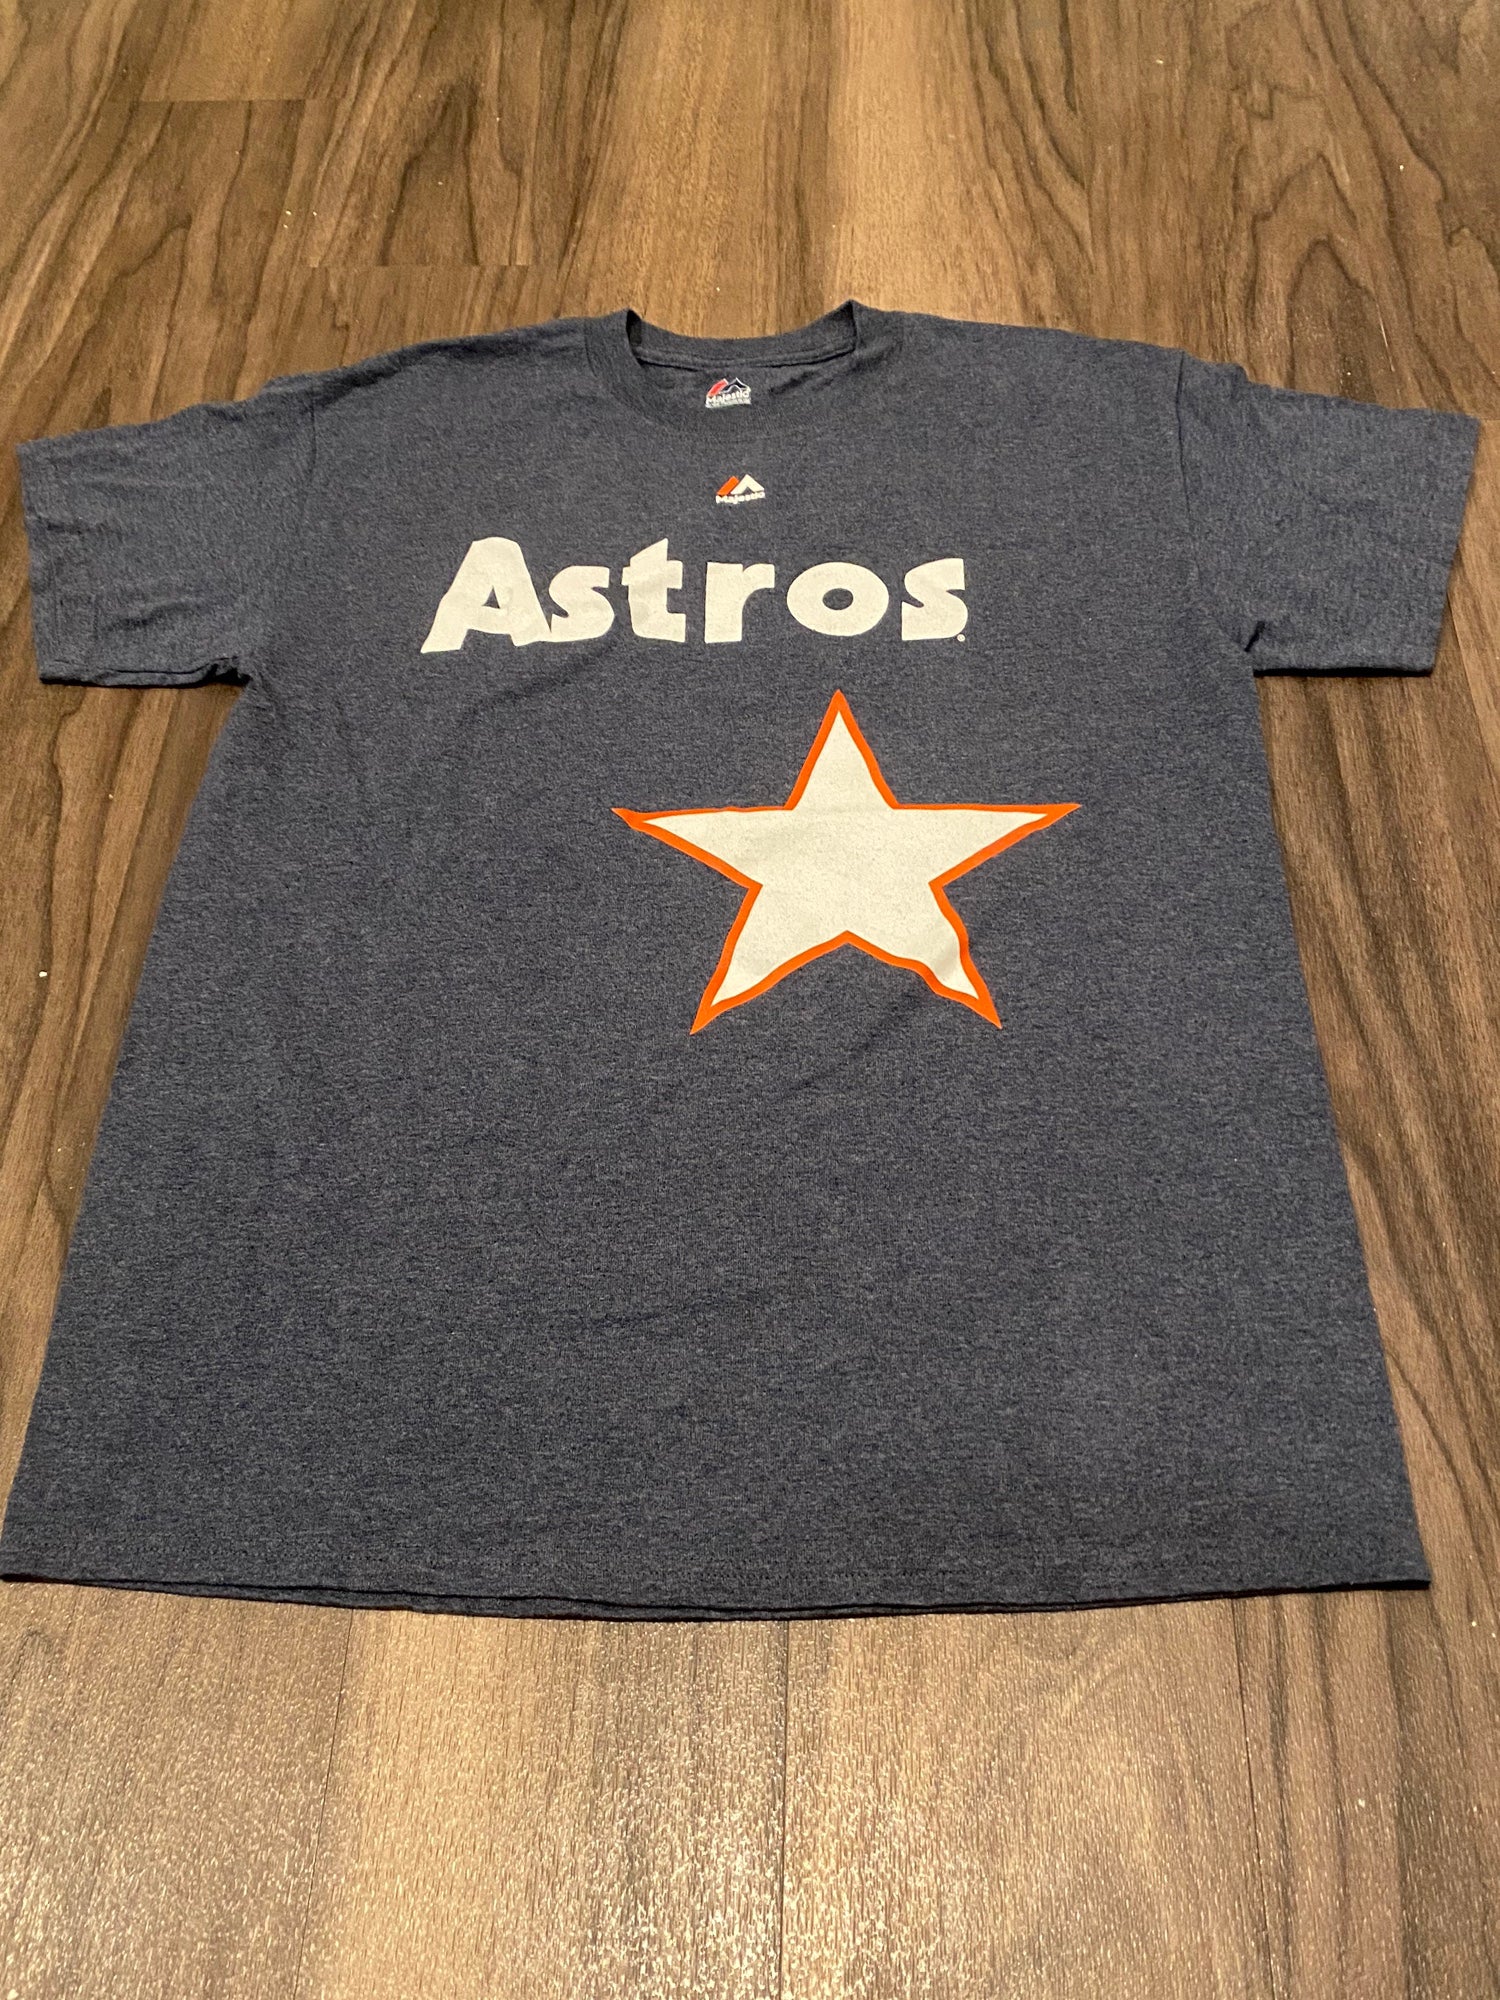 Houston Astros Nolan Ryan Shirt Adult Medium MLB